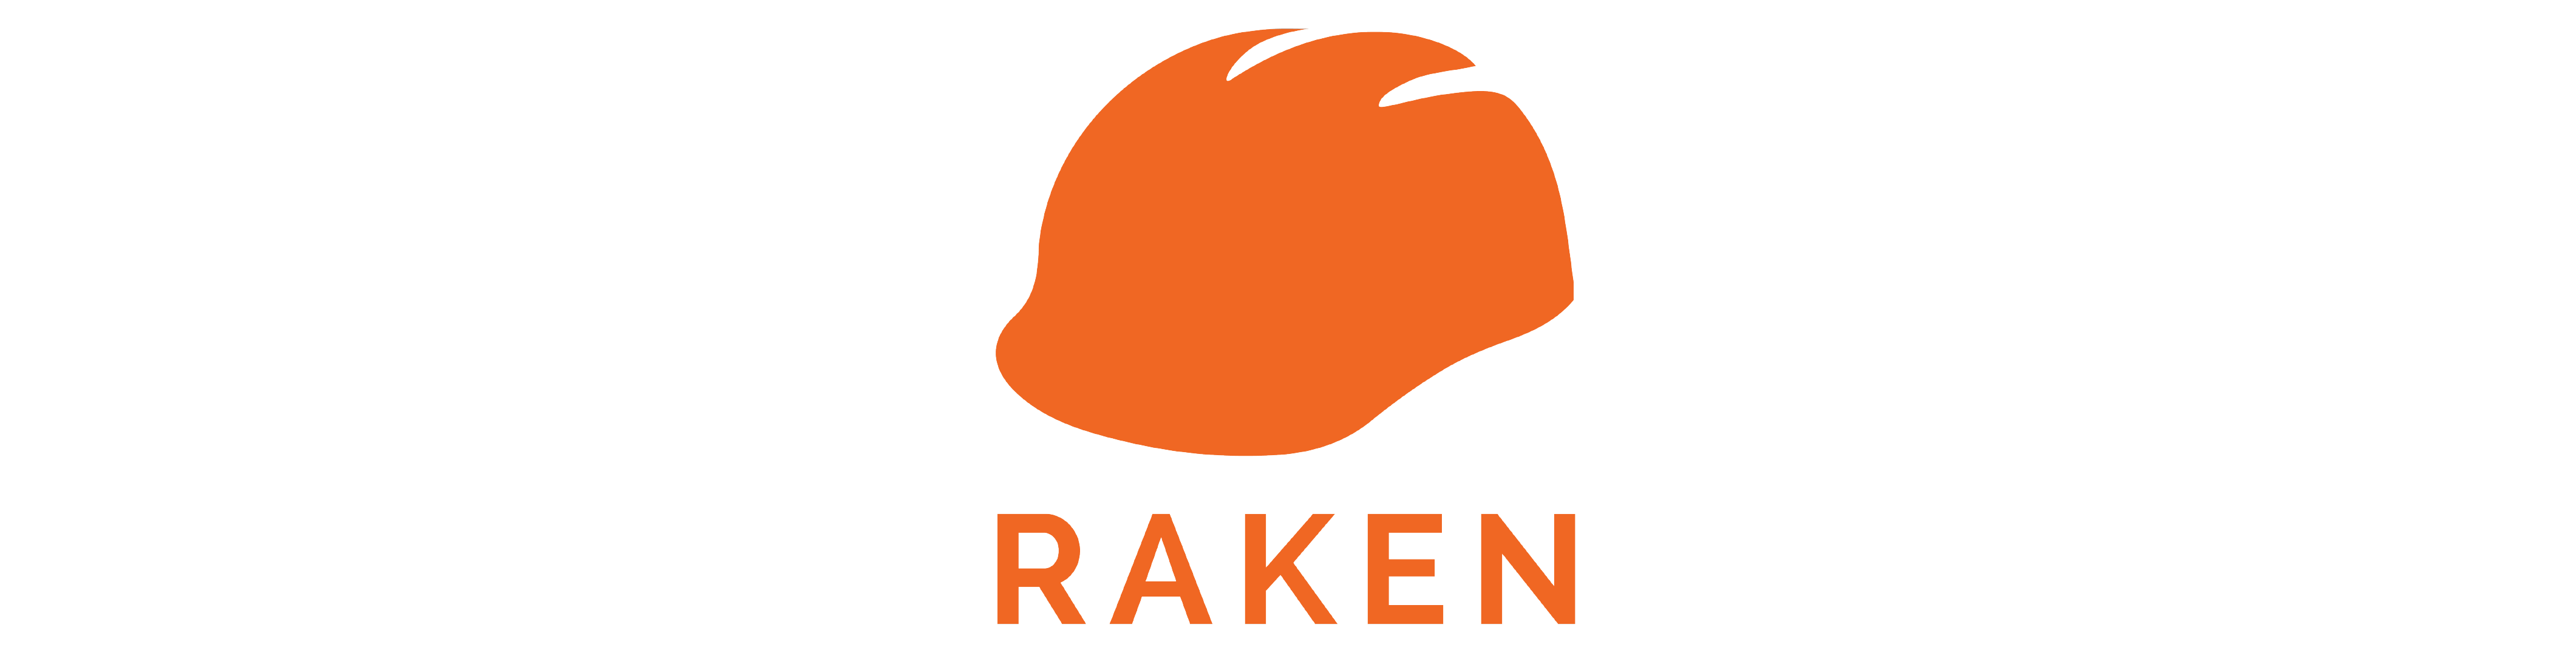 Raken-01